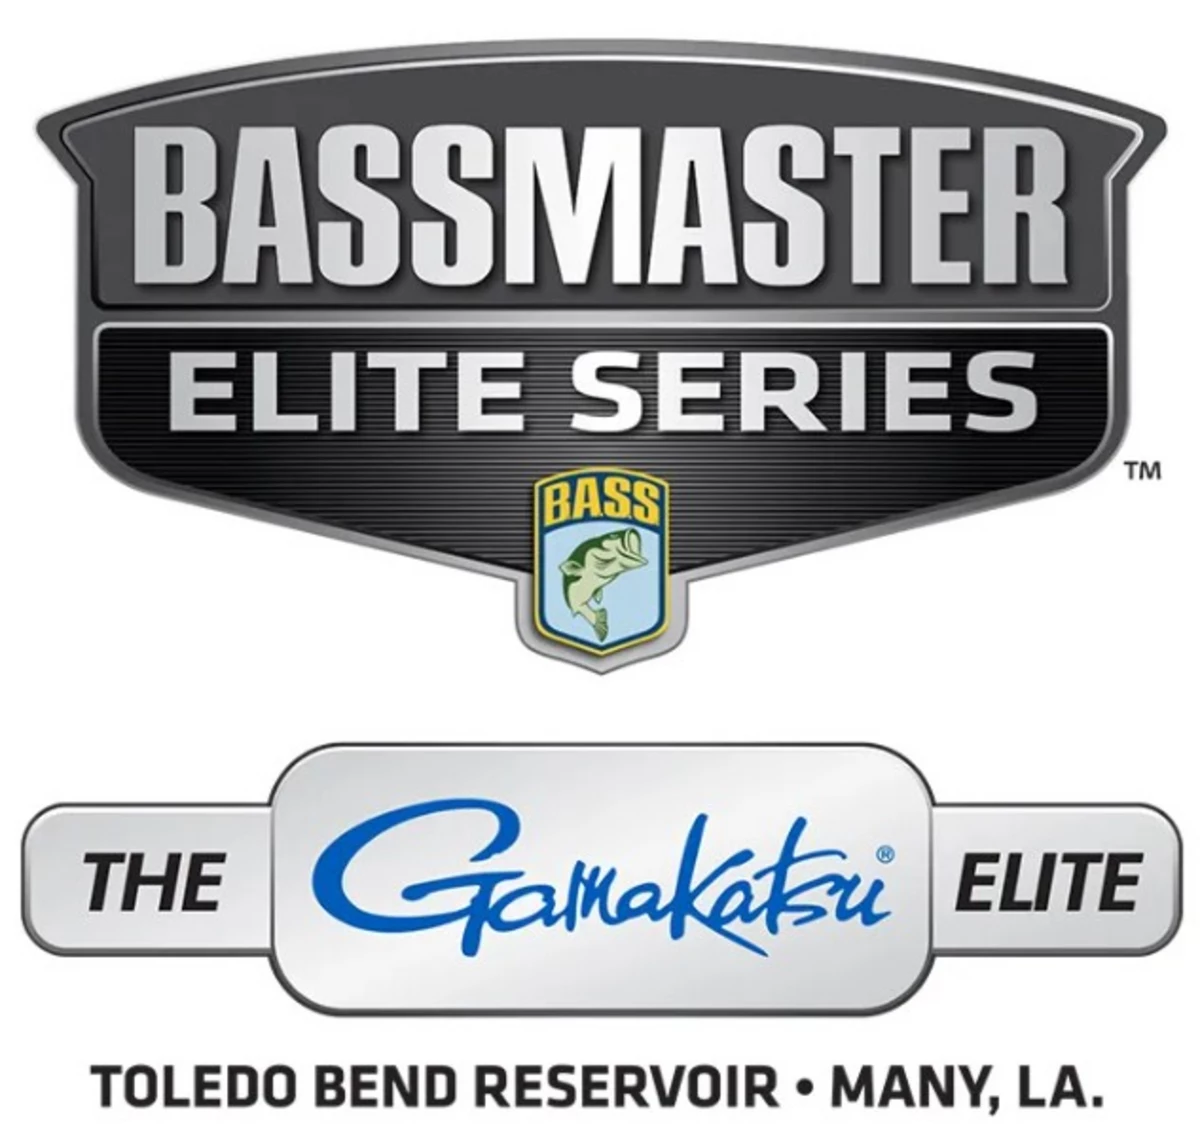 Bassmaster Elites Excited For Toledo Bend Return Next Week